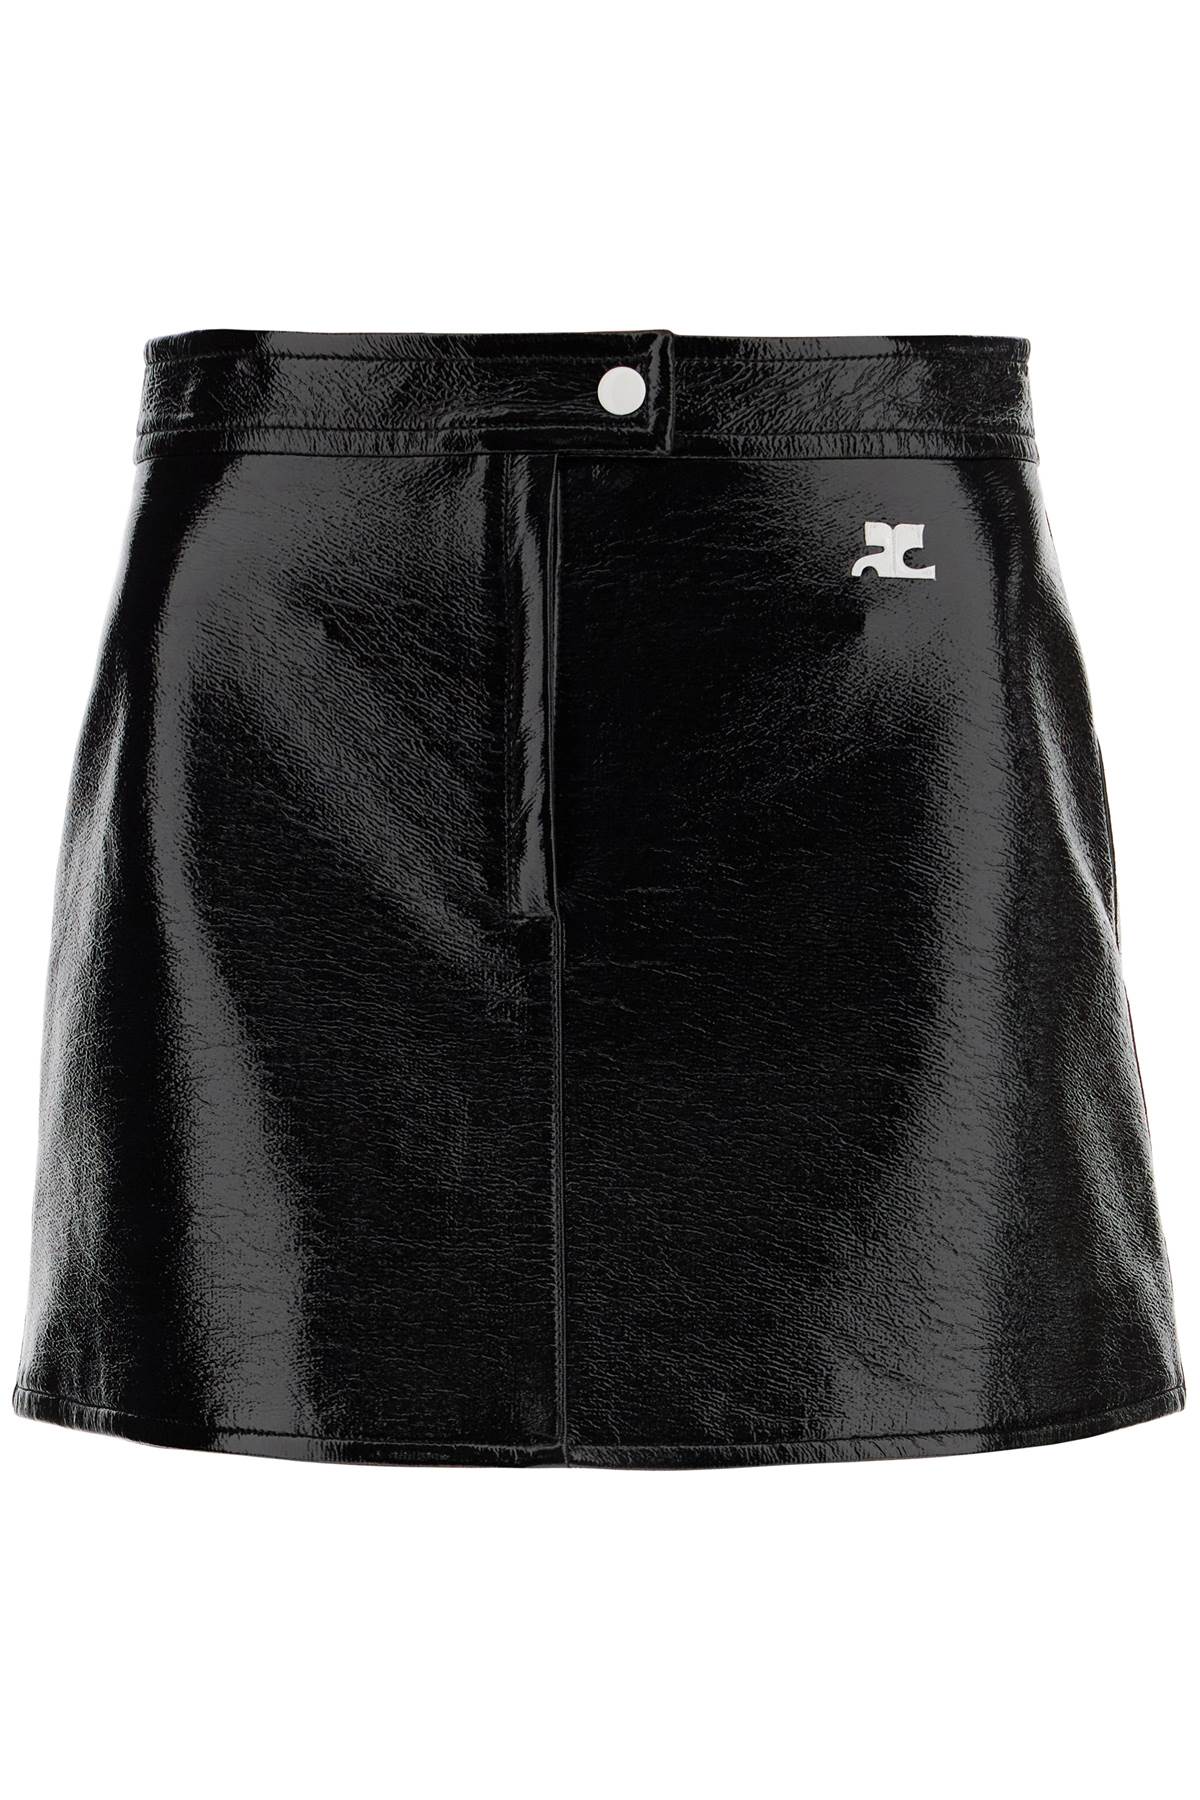 Courrèges COURREGES vinyl effect mini skirt